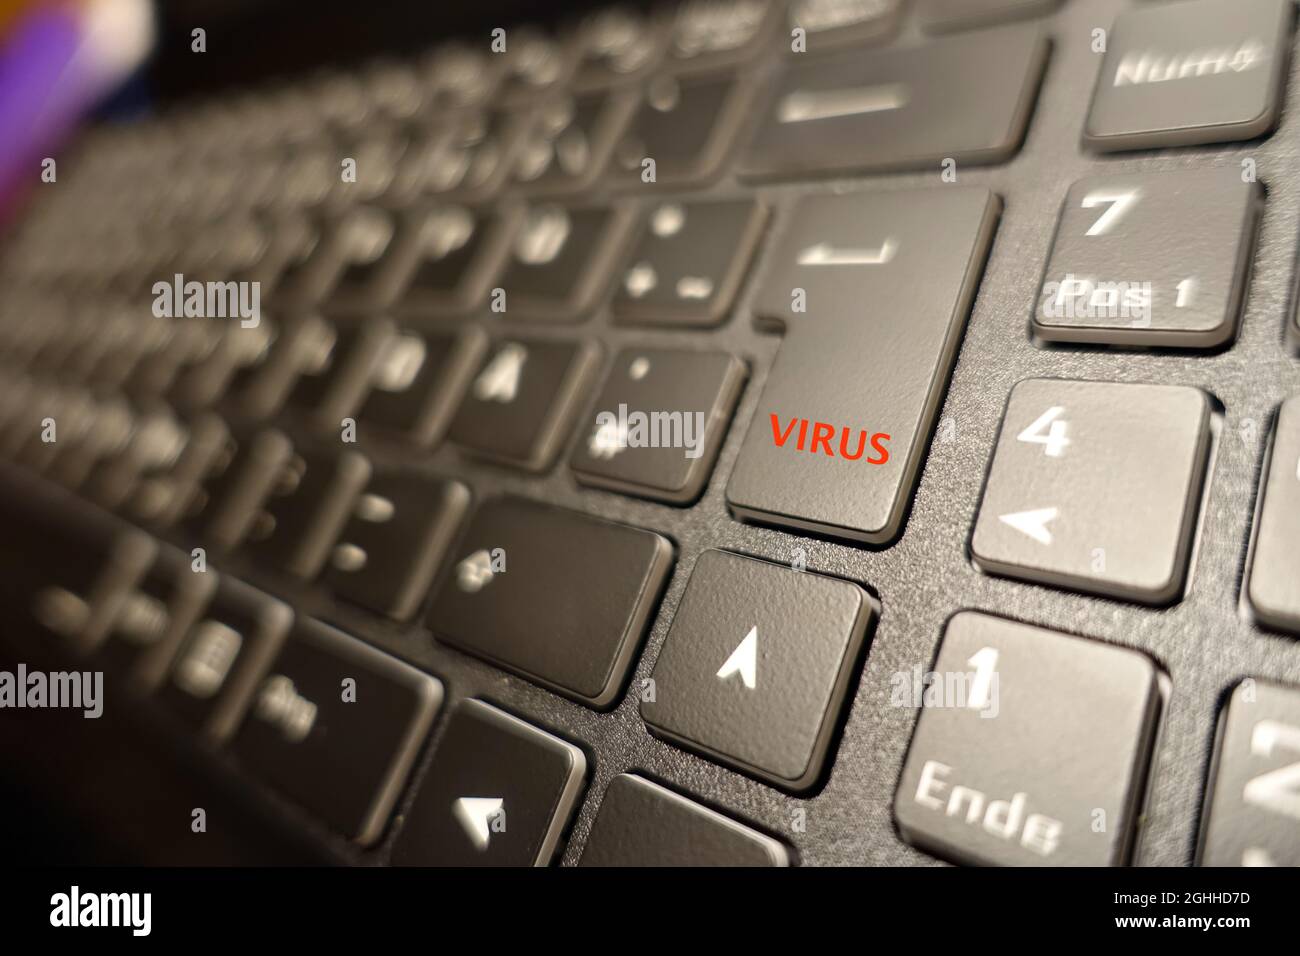 image symbole - clavier de l'ordinateur avec touche virus Photo Stock -  Alamy